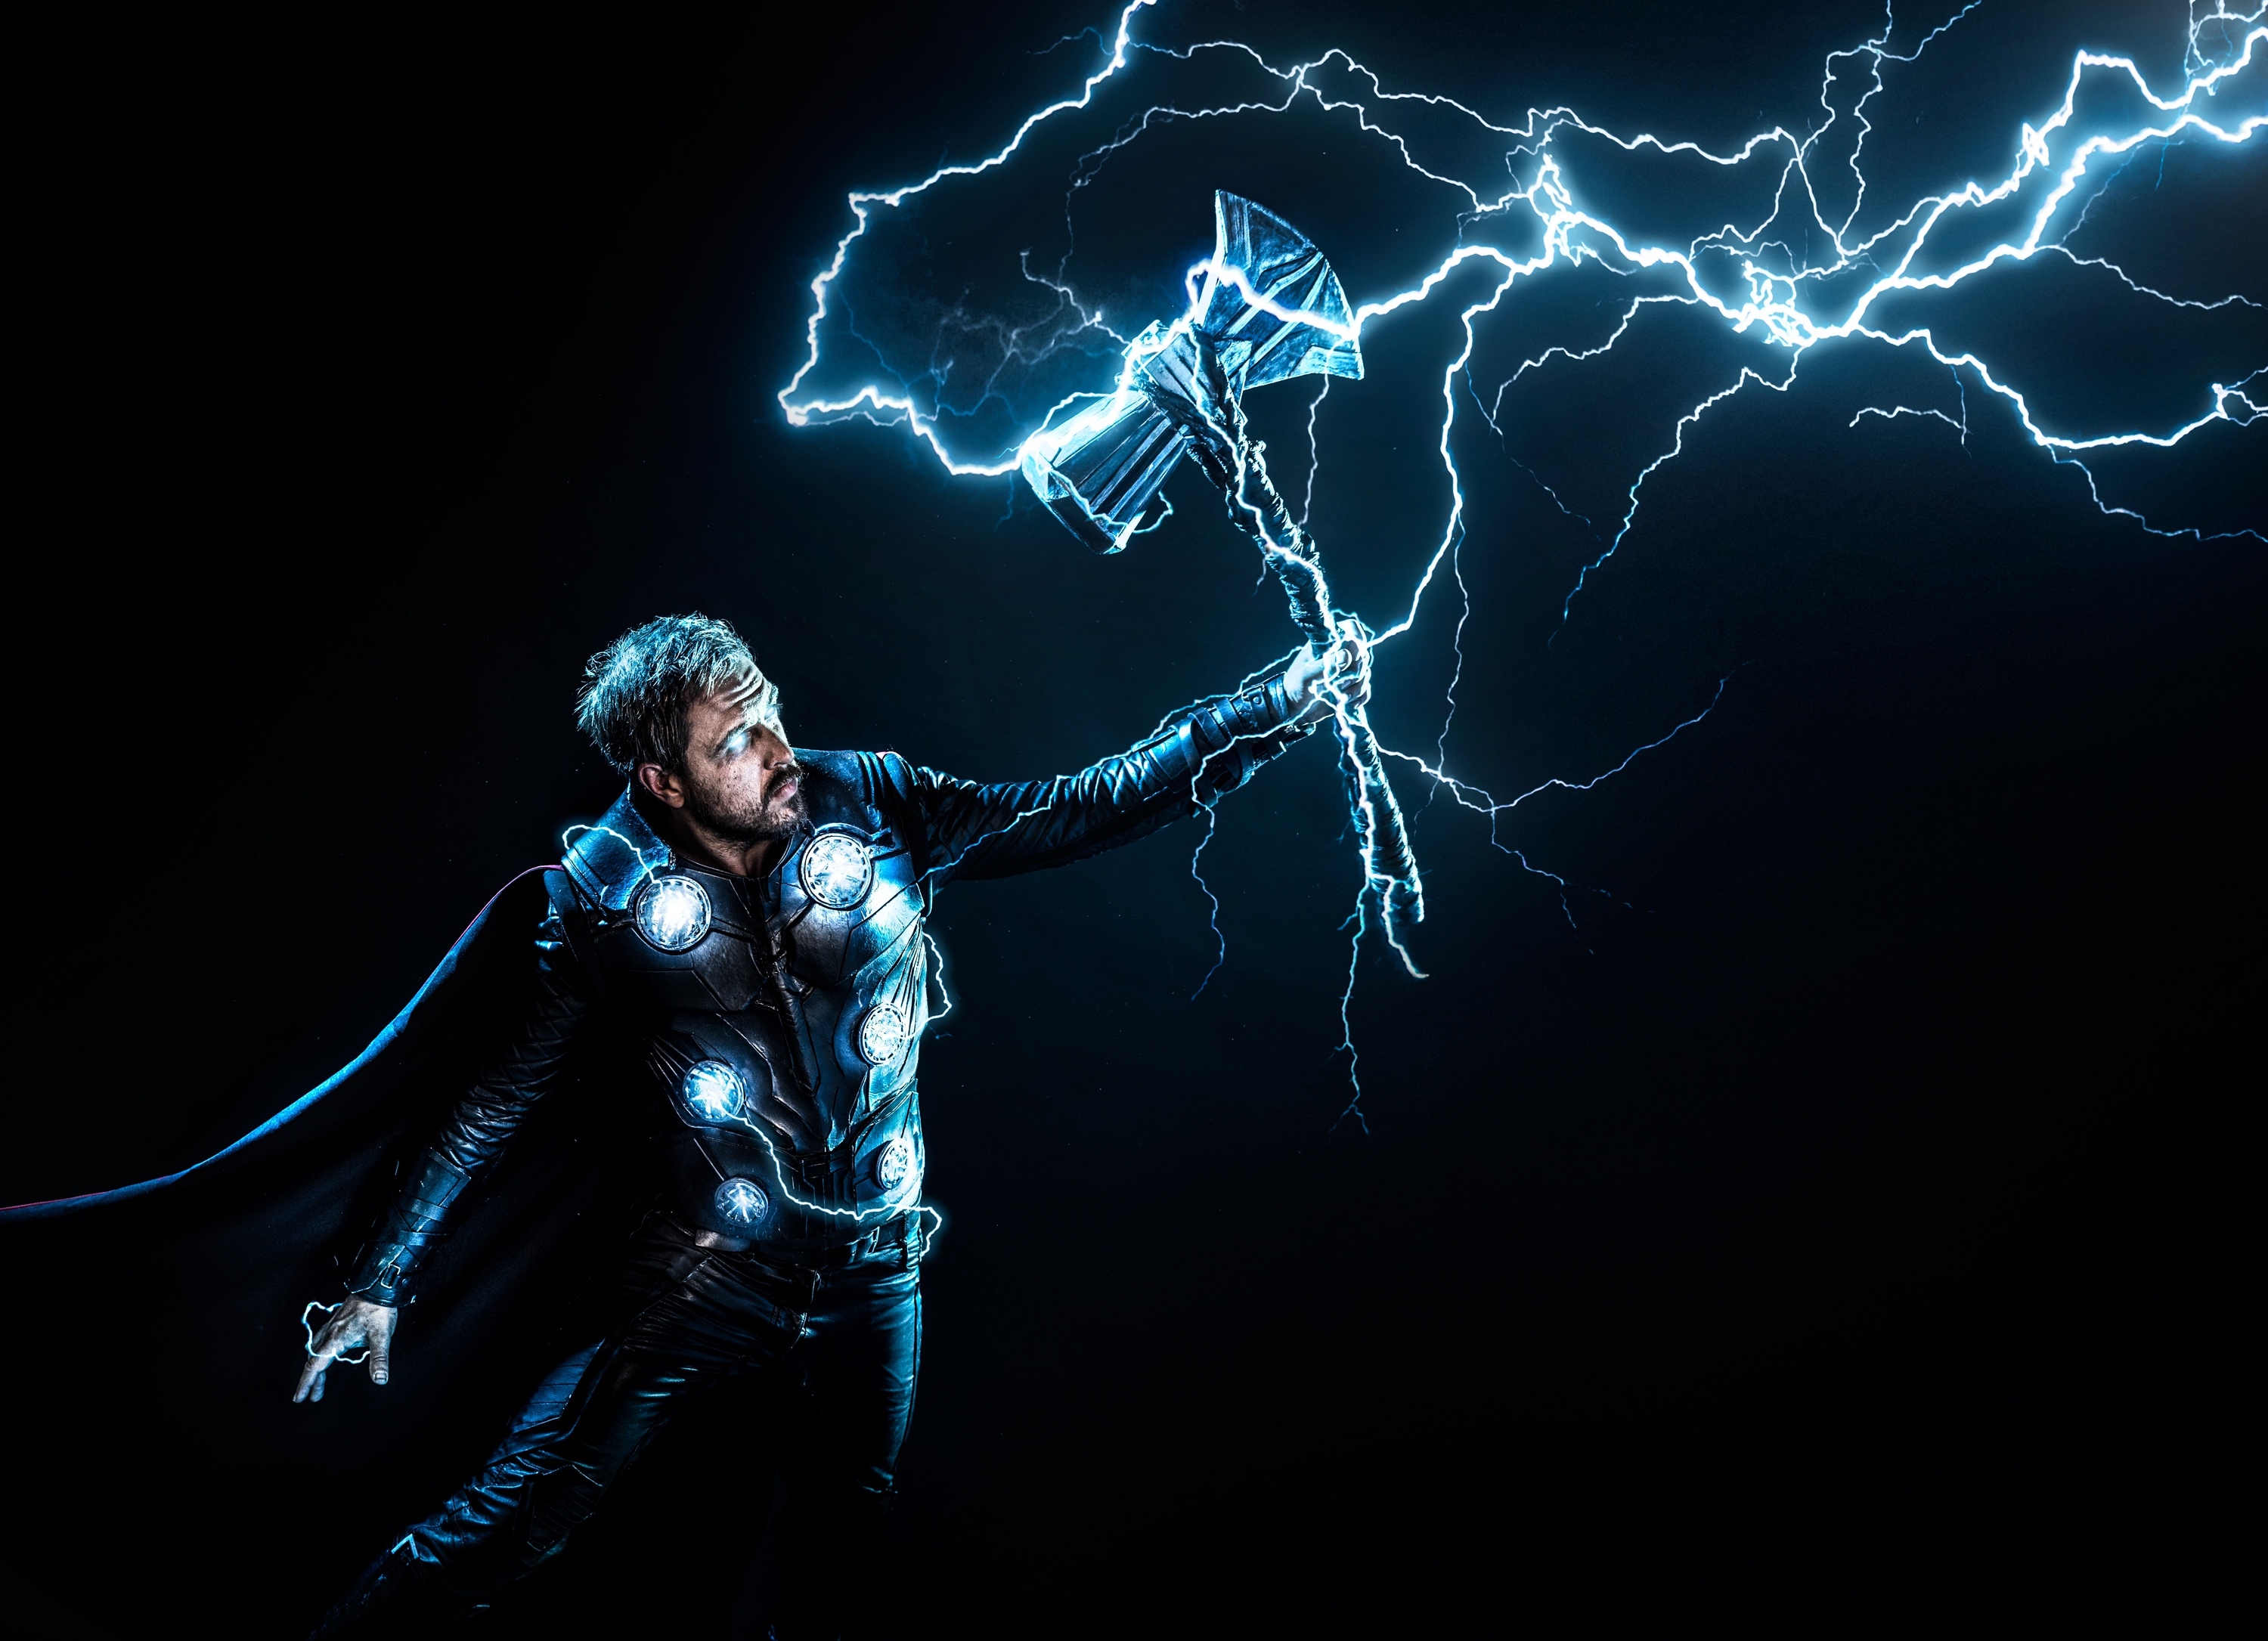 318580 Avengers: Endgame, Thor, Stormbreaker, Hammer, Lightning, 4K - Rare  Gallery HD Wallpapers